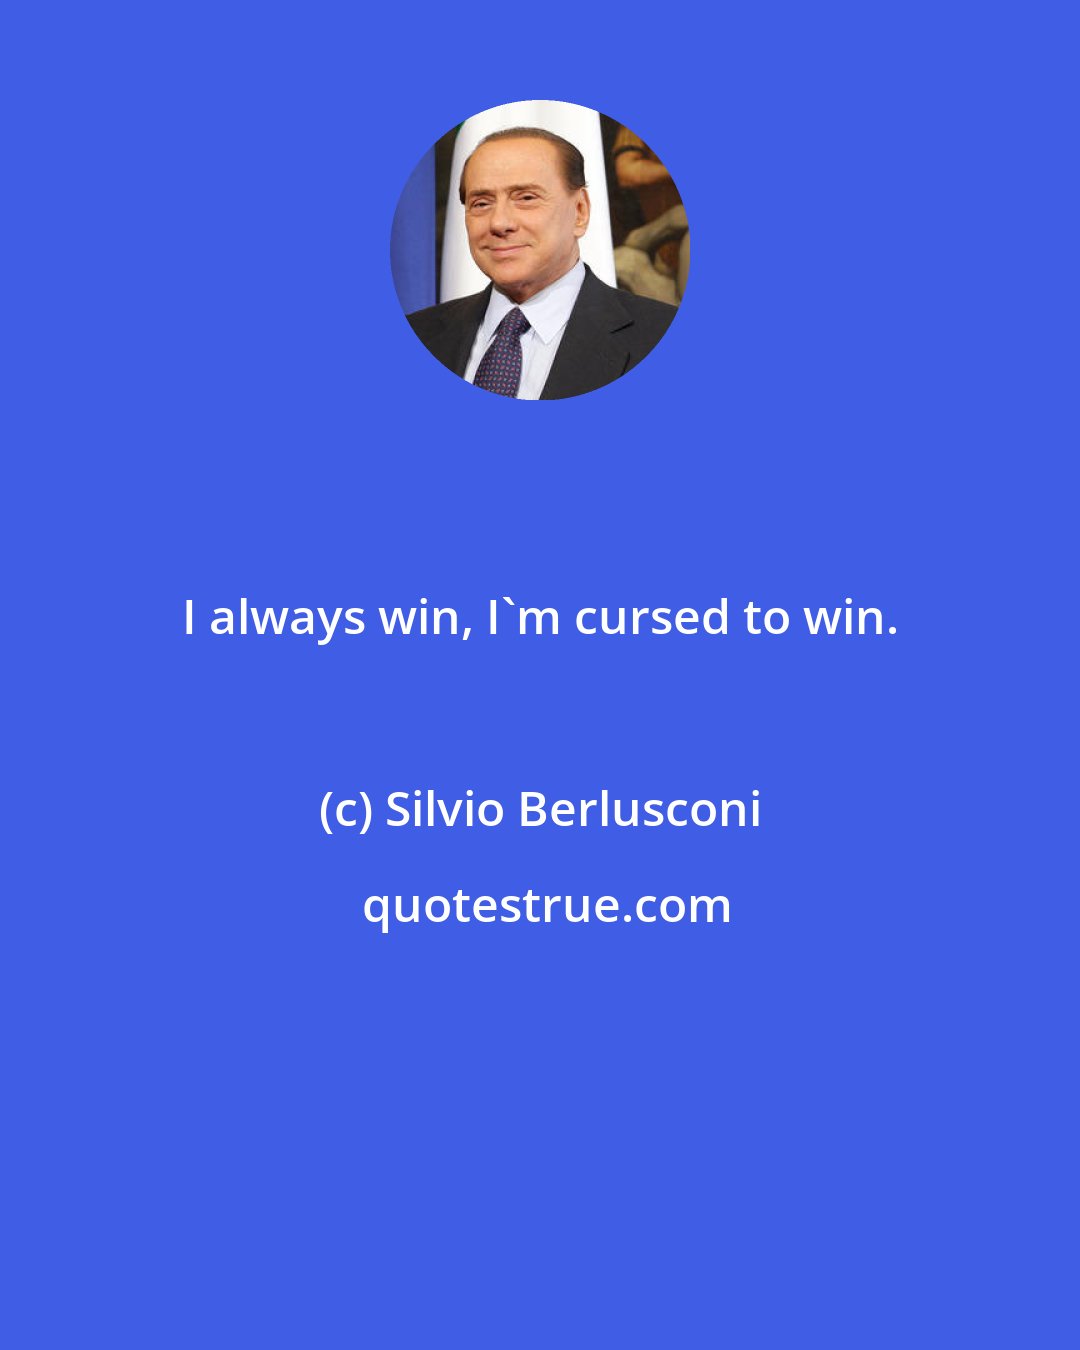 Silvio Berlusconi: I always win, I'm cursed to win.